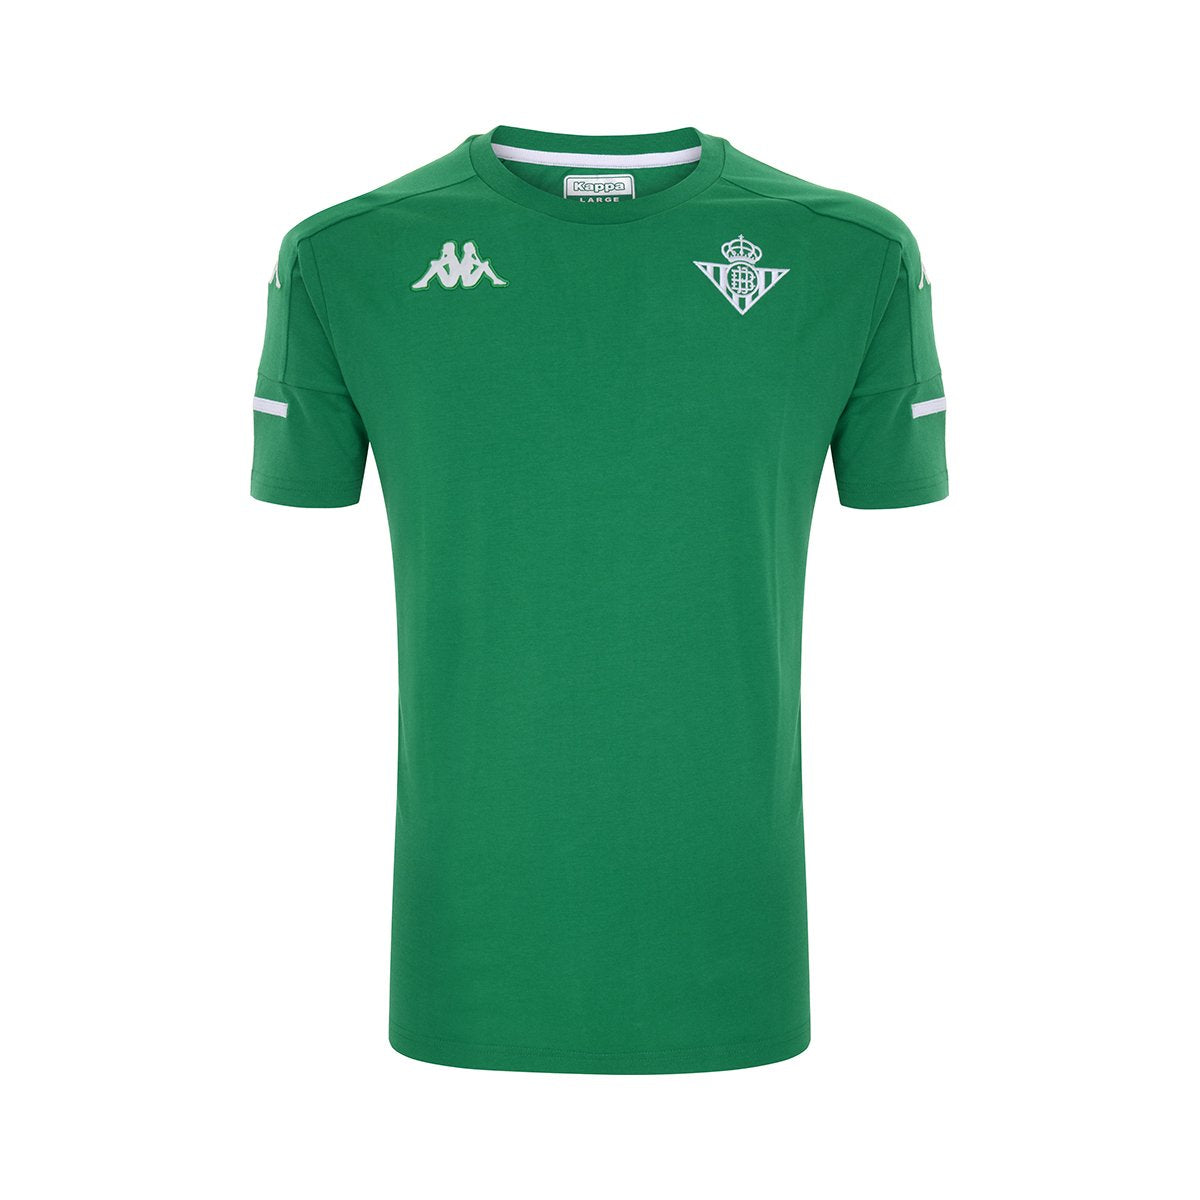 Camiseta Ayba 4 Real Betis Balompié Verde Hombre - Imagen 1